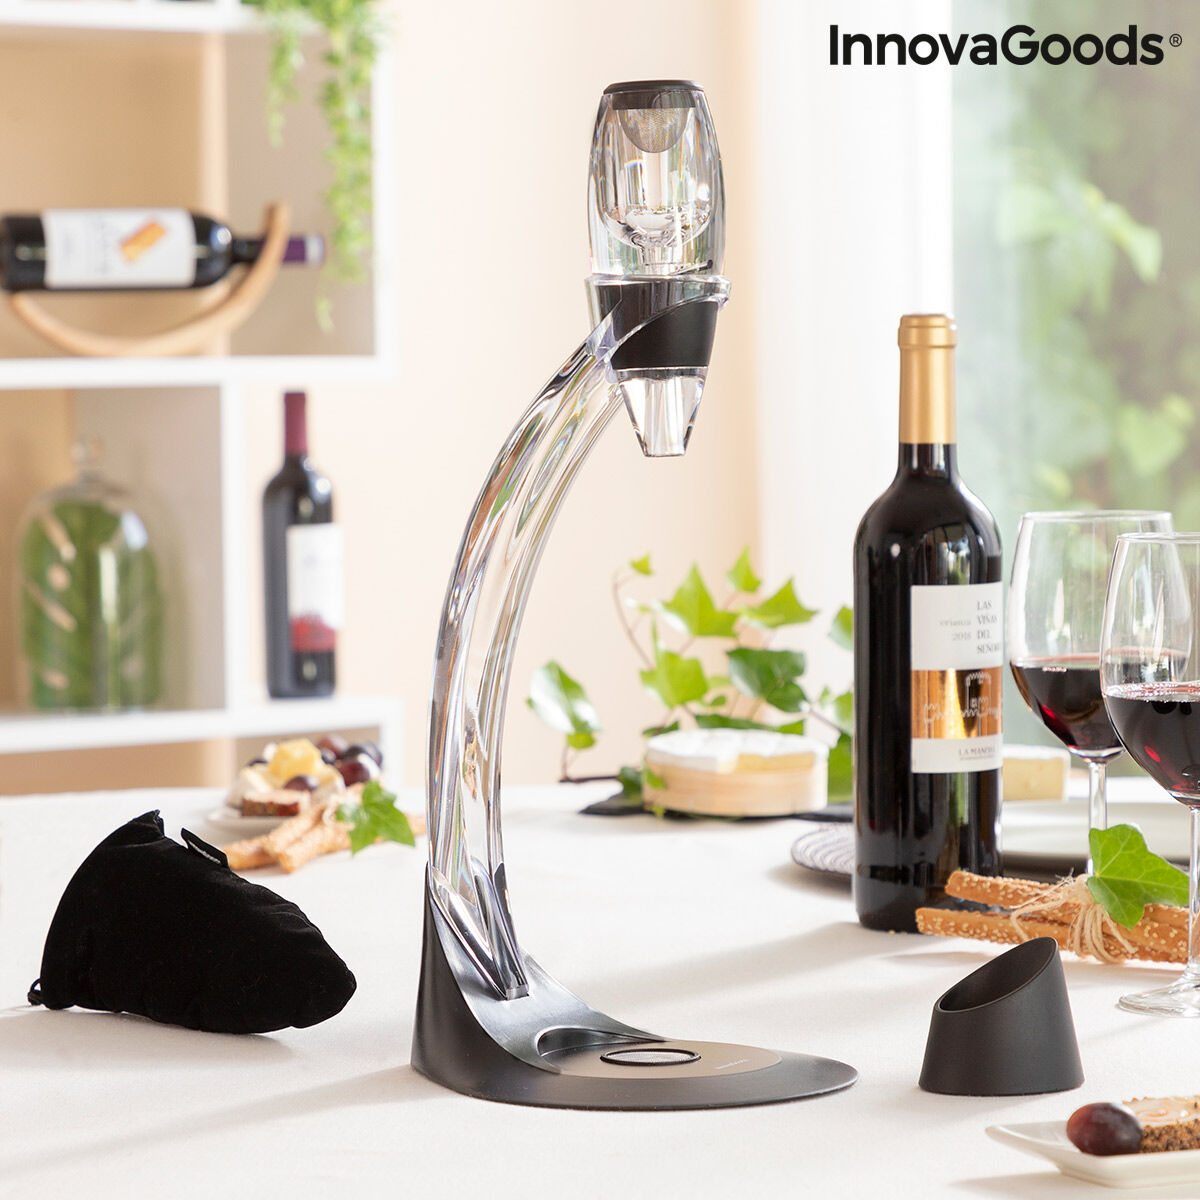 Professionele wijnbeluchter met torenvormige standaard en antidruppelbasis Winair InnovaGoods